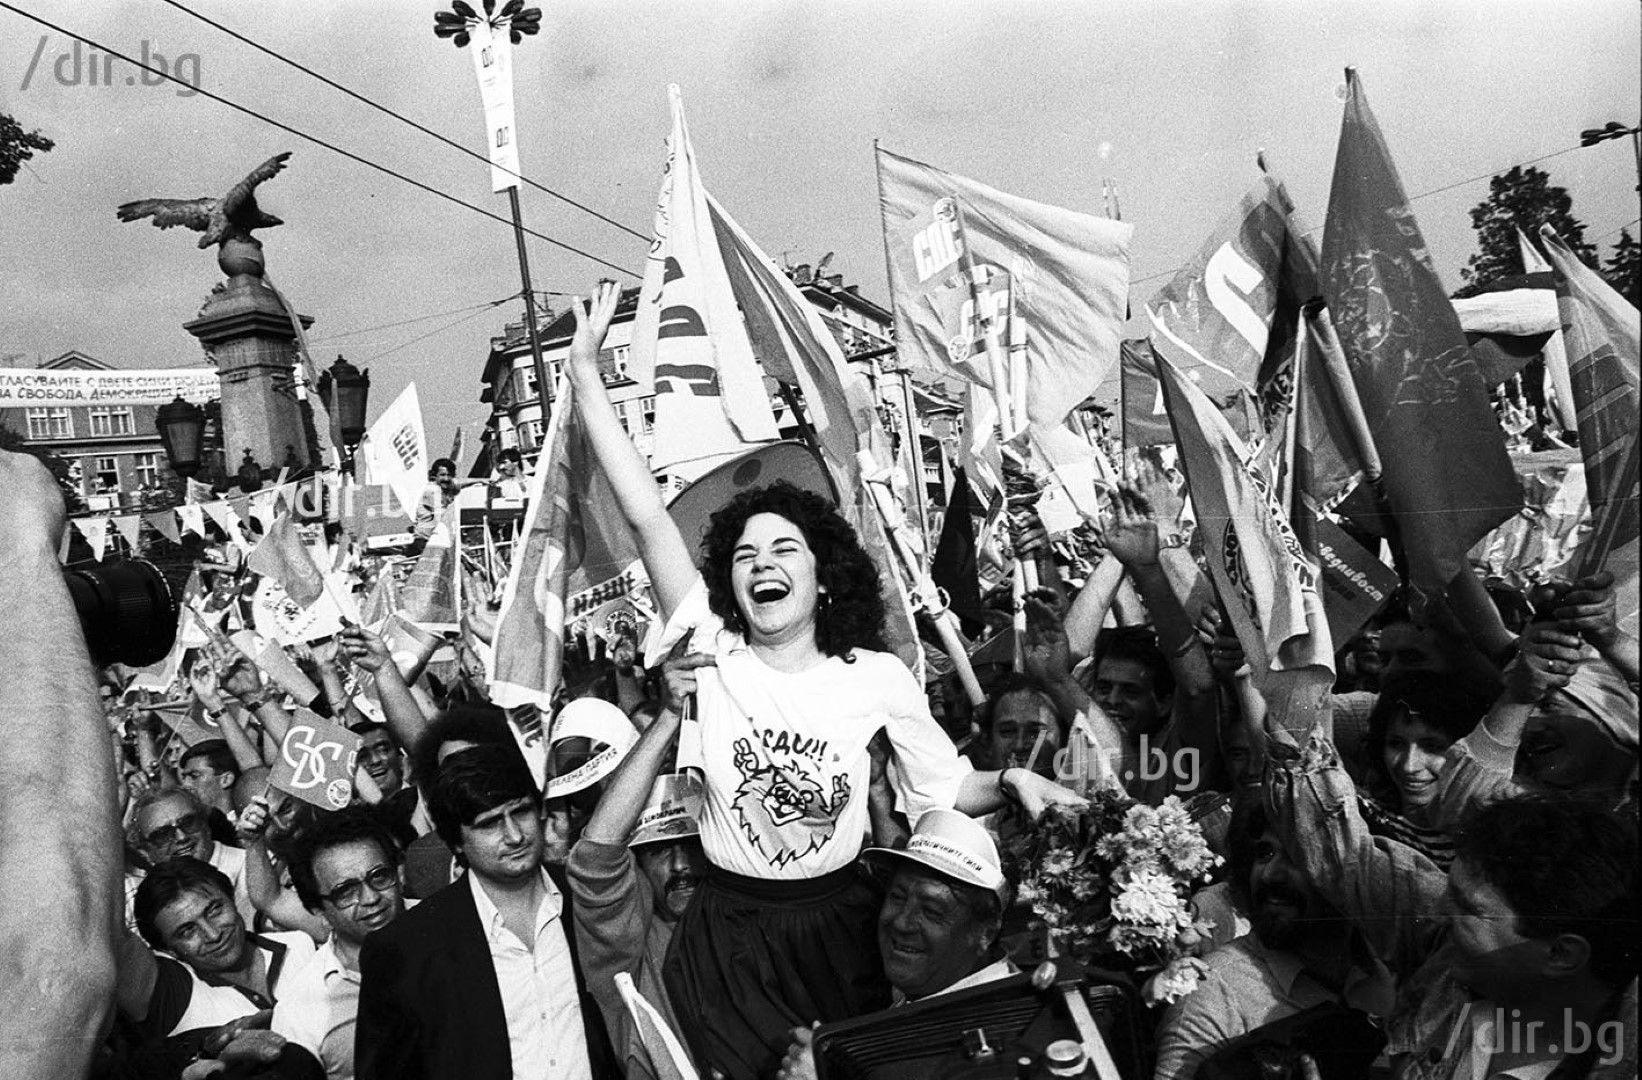 На 7 юни 1990 година СДС организира митинг с 1 милион участници. Демократичните движения печелят популярност в цяла Източна Европа